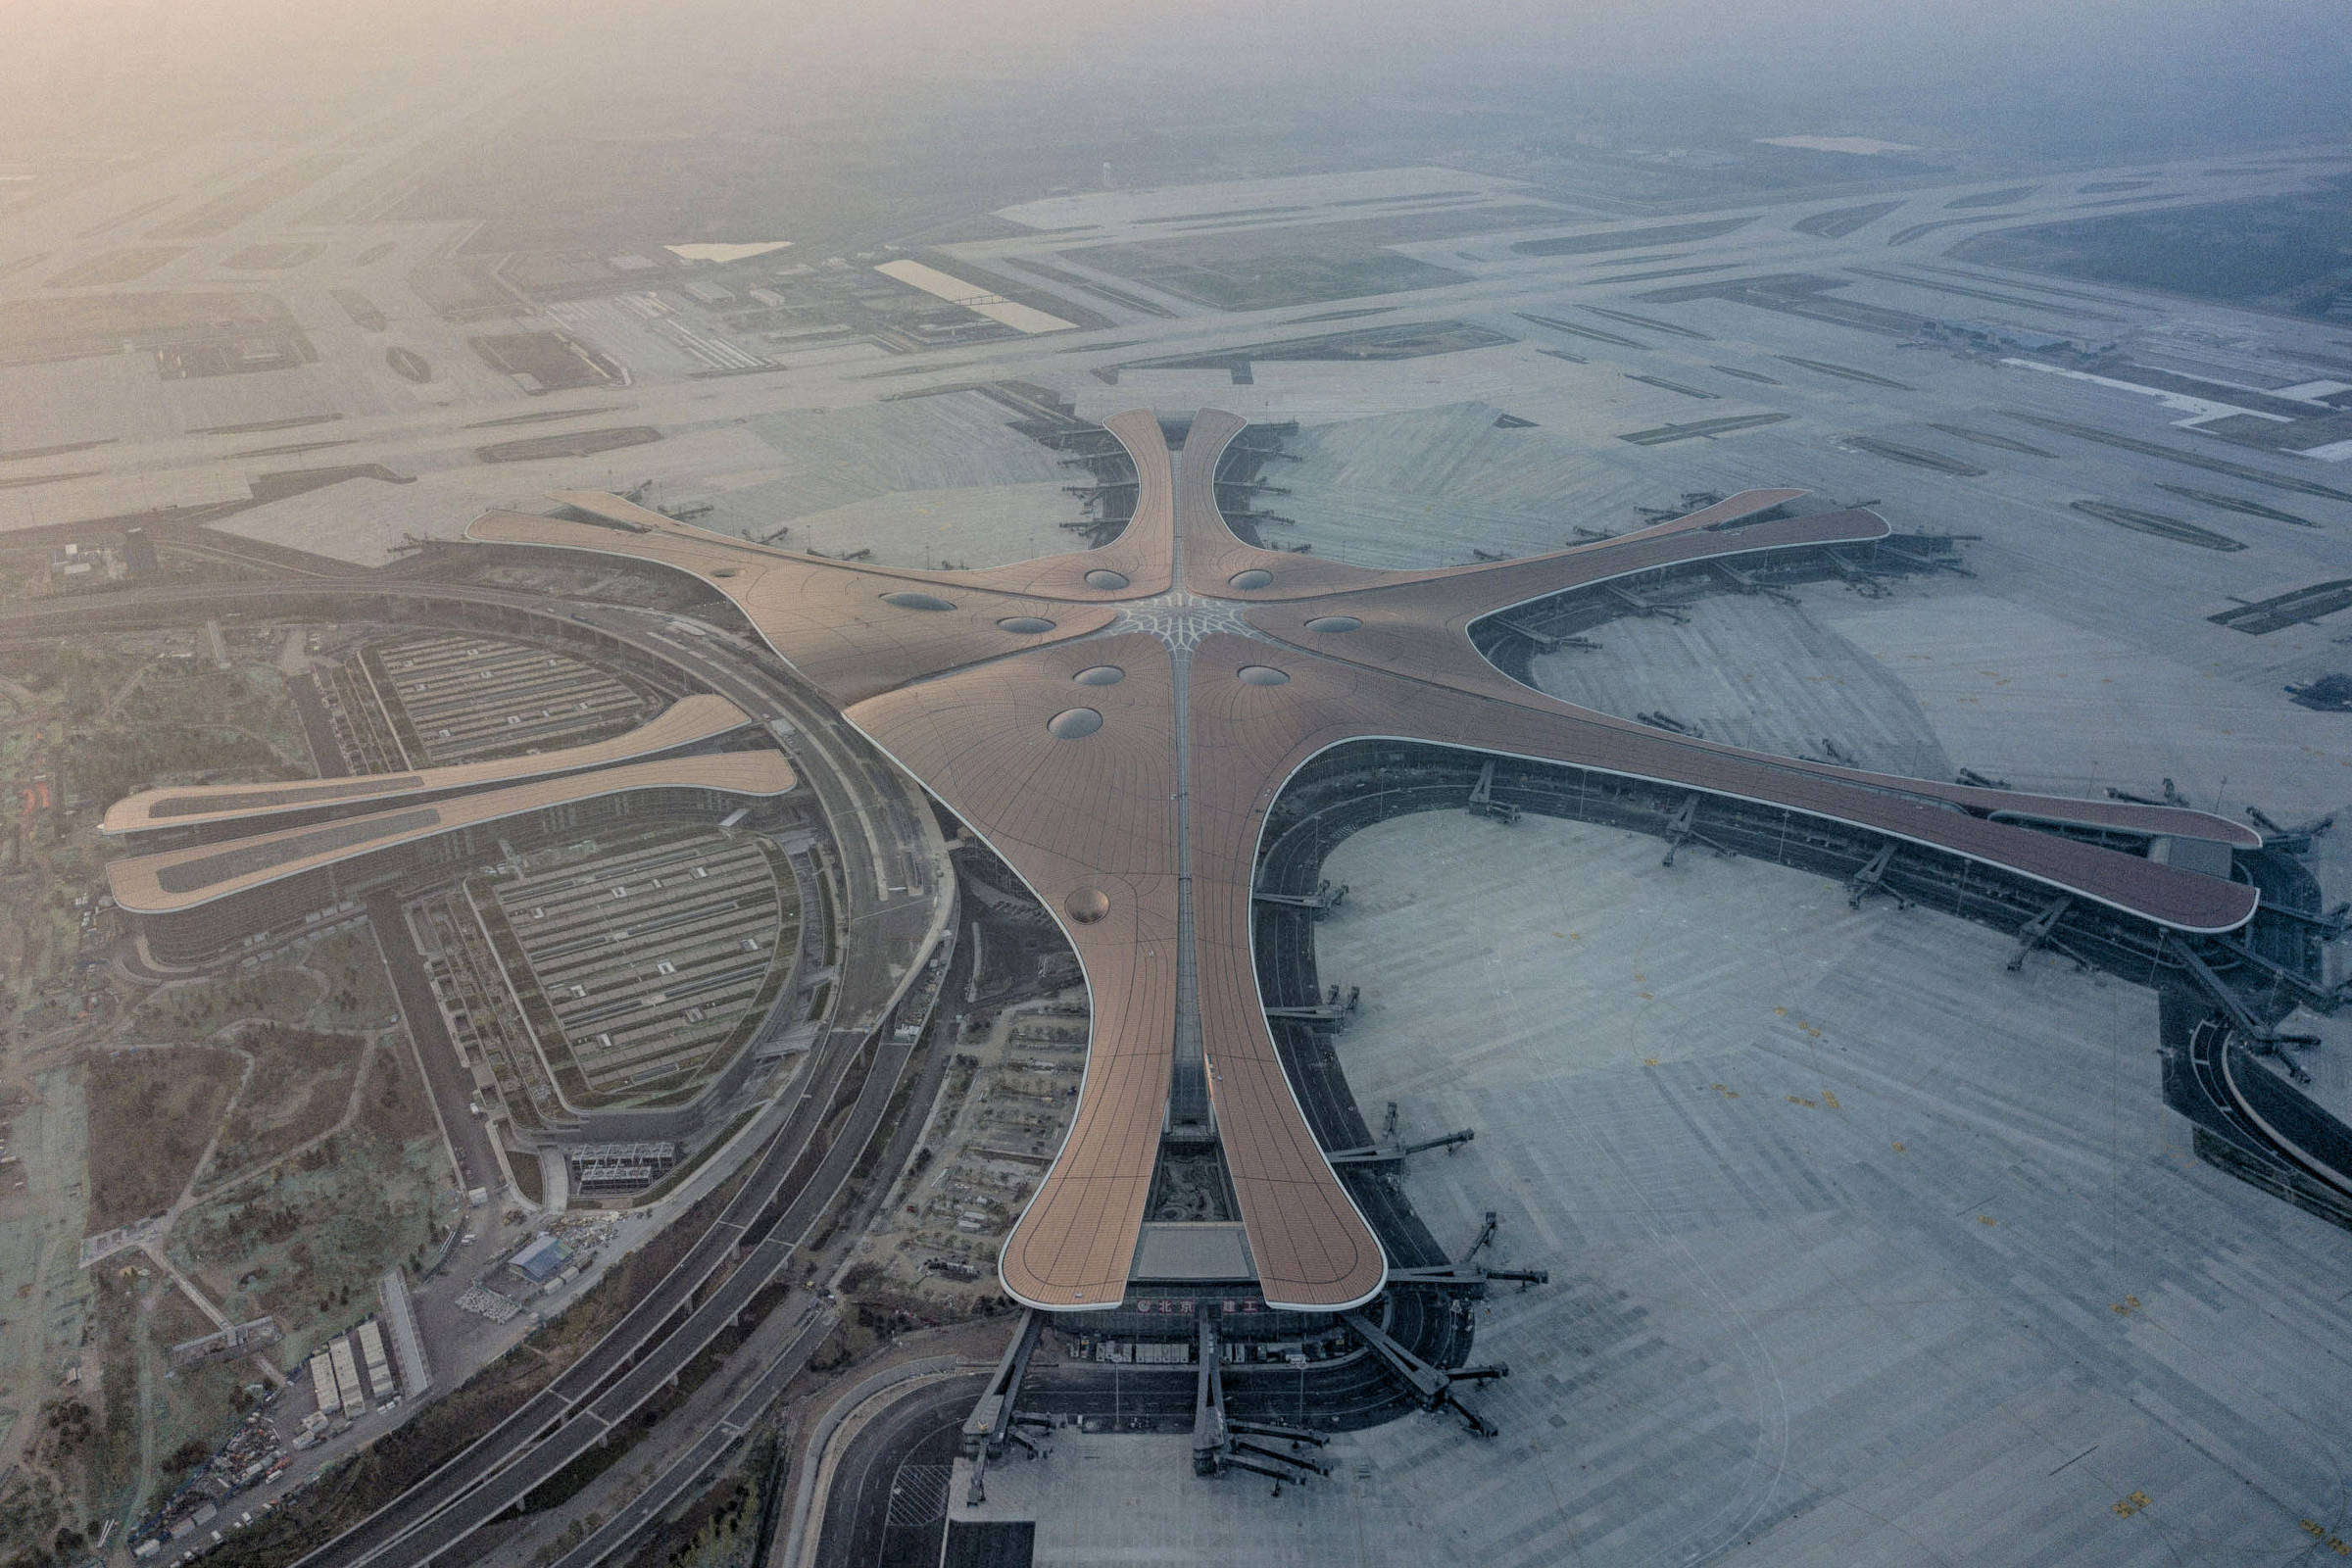 Прилет аэропорт пекин. Пекинский Международный аэропорт Дасин. Пекин Дасин, Международный аэропорт, Китай. Международный аэропорт Шоуду в Пекине (Китай). Новый аэропорт Пекина Дасин.